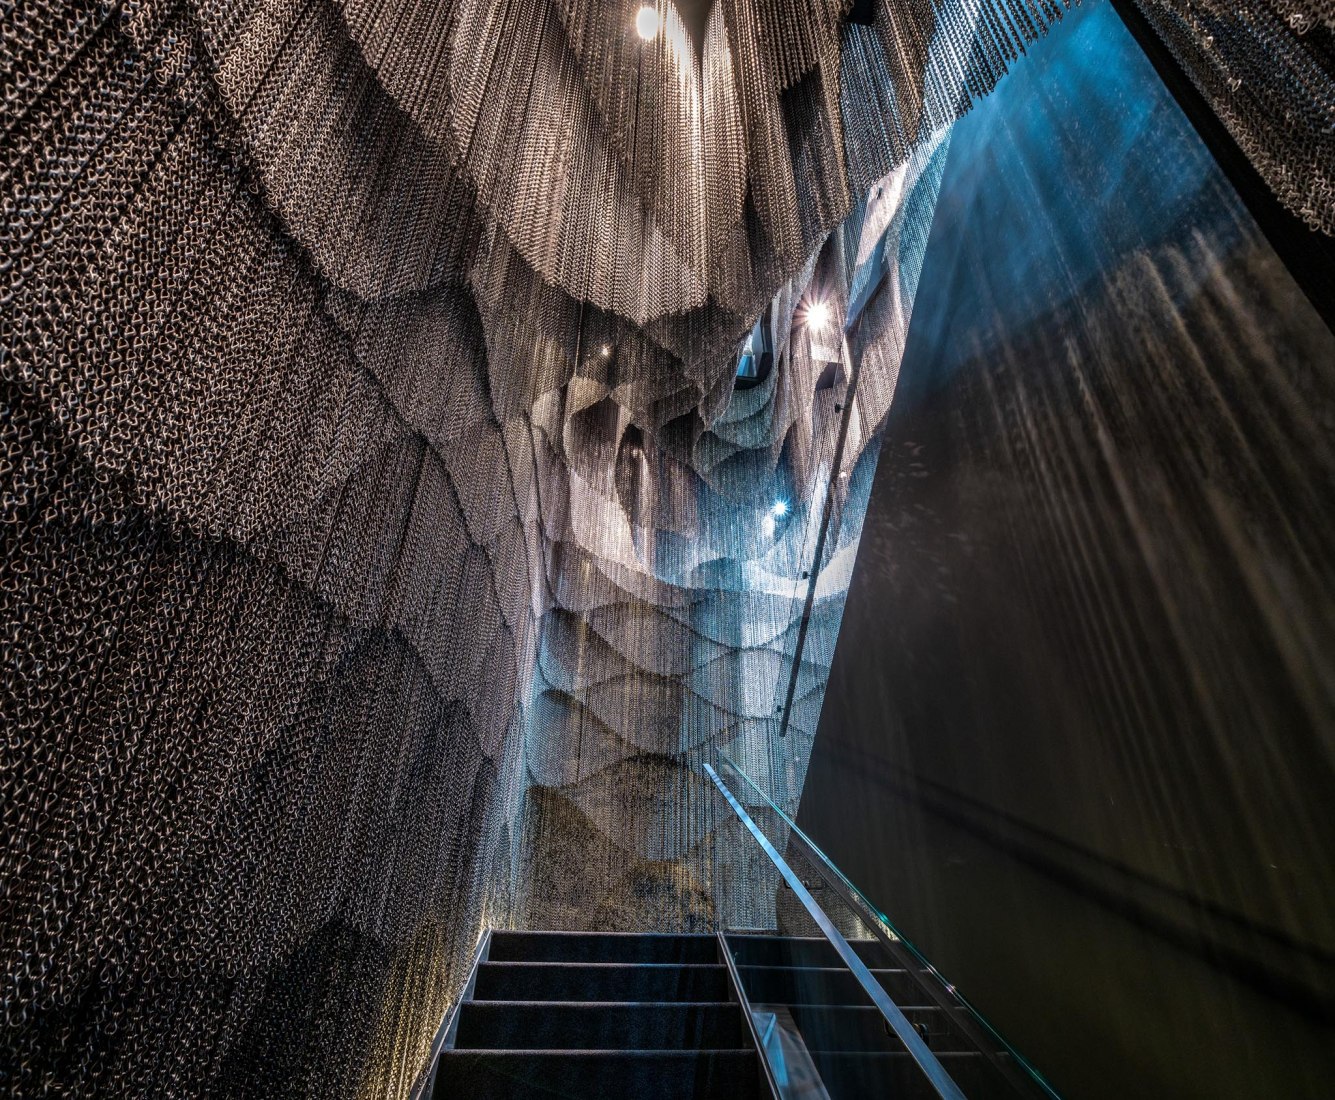 Intervención en la escalera final de la Casa Batlló por Kengo Kuma. Imagen cortesía de Casa Batlló.